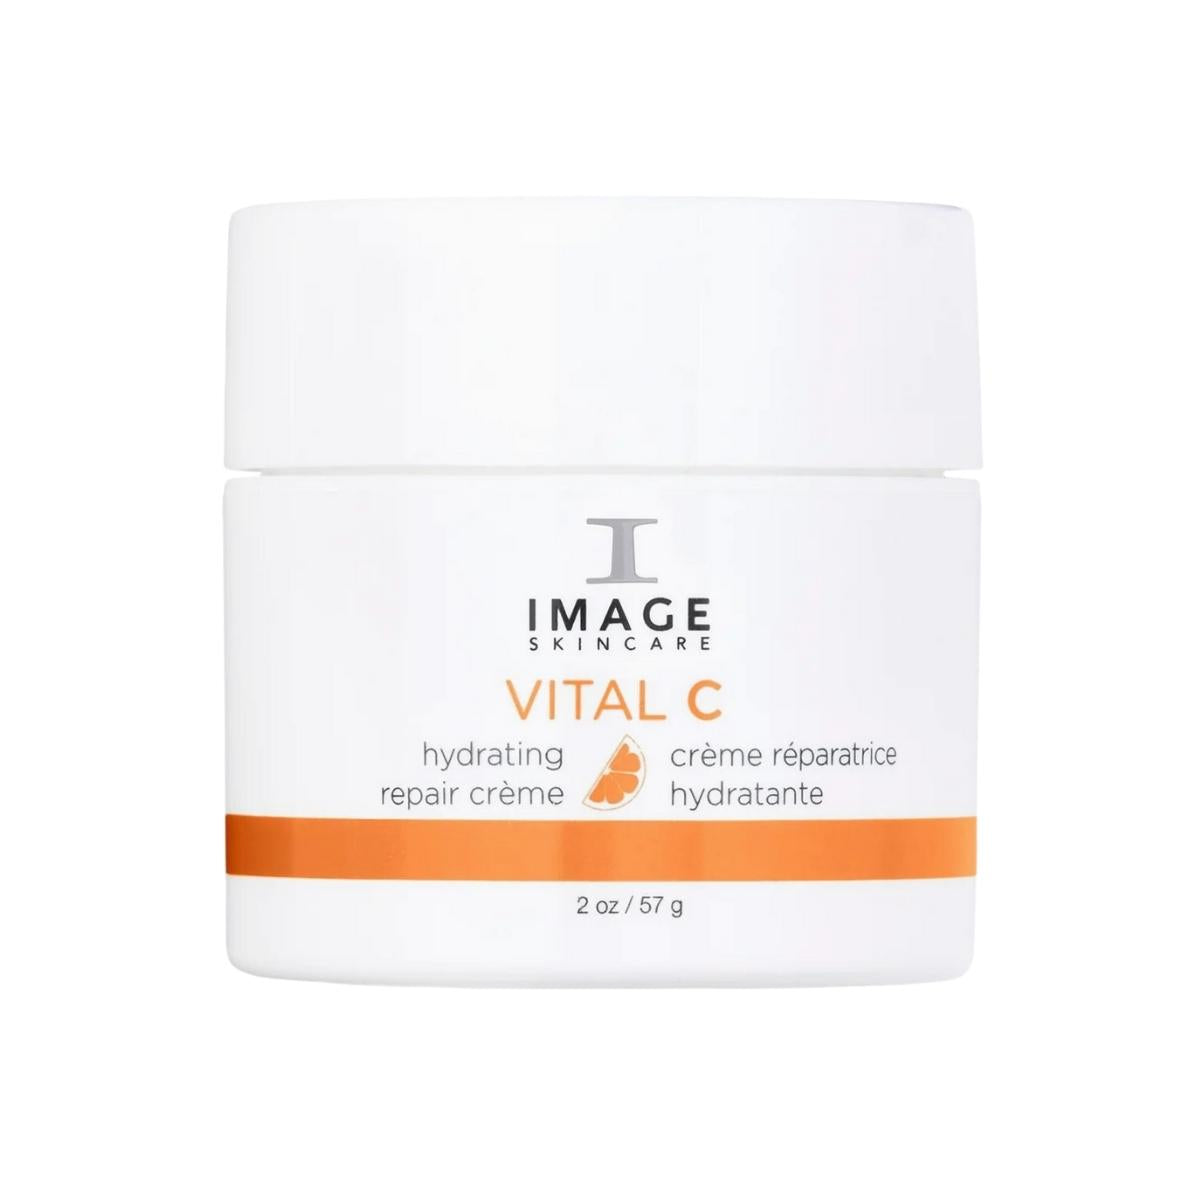 IMAGE Skincare Vital C Hydrating Repair Creme